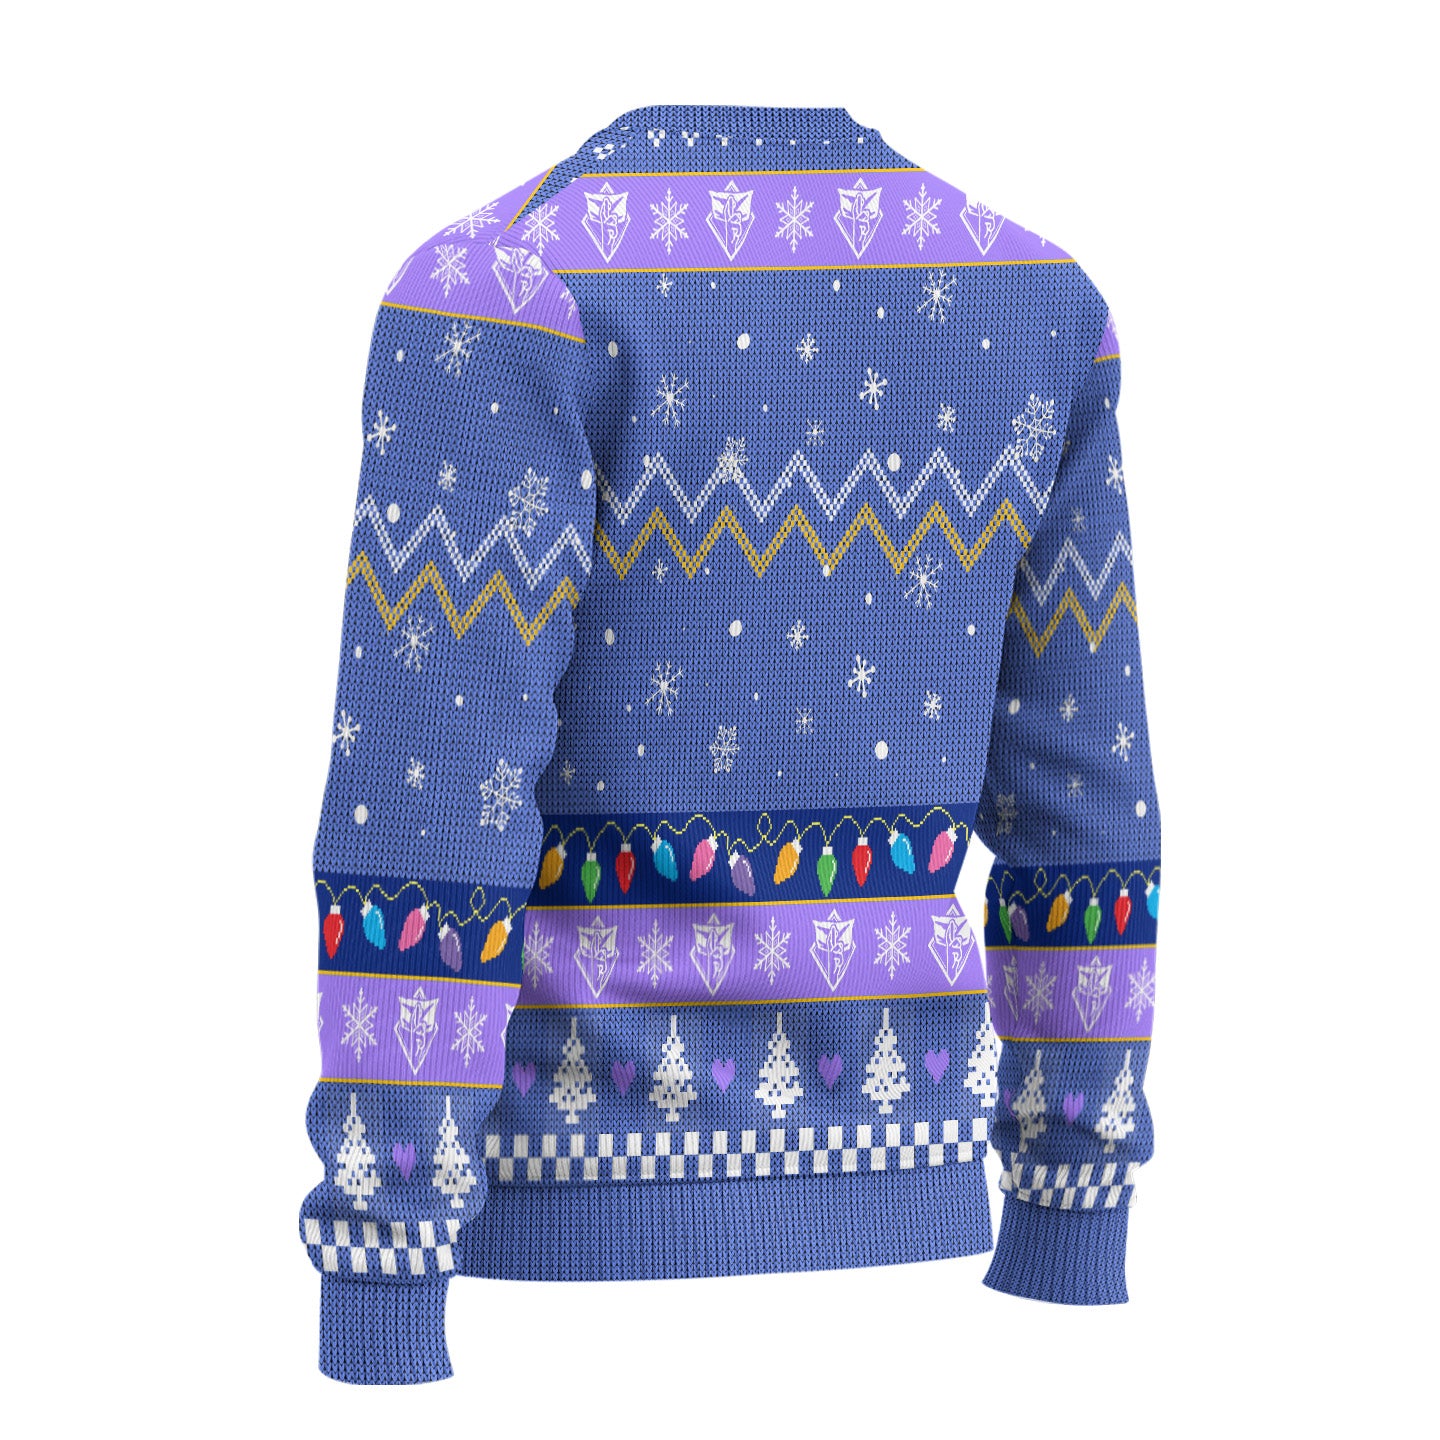 Jujutsu Kaisen Ugly Christmas Sweater Custom Satoru Gojo New Design